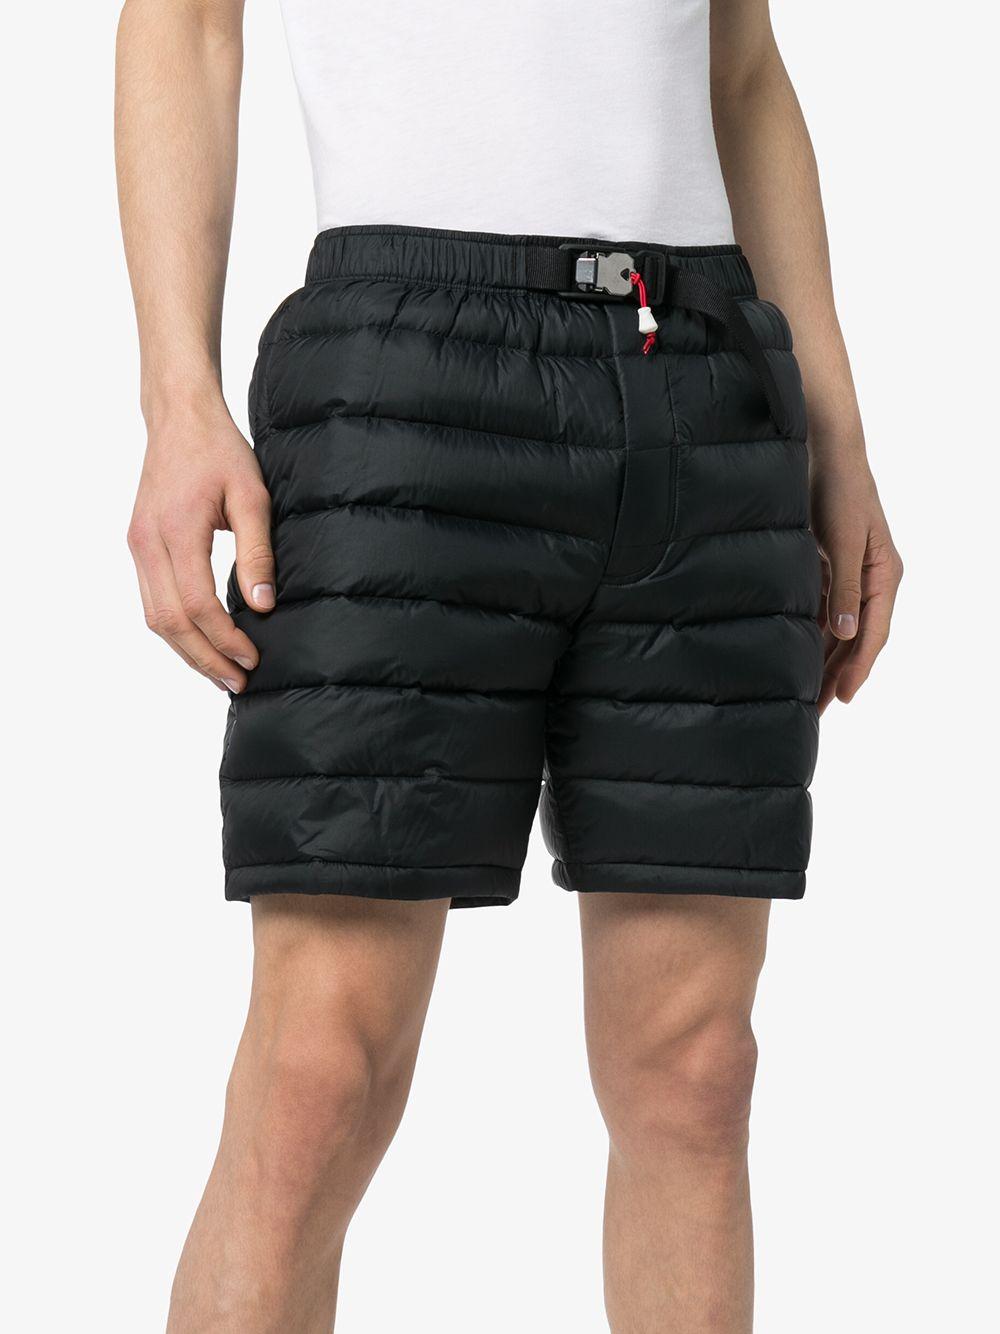 Nike x Tom Sachs Shorts Black